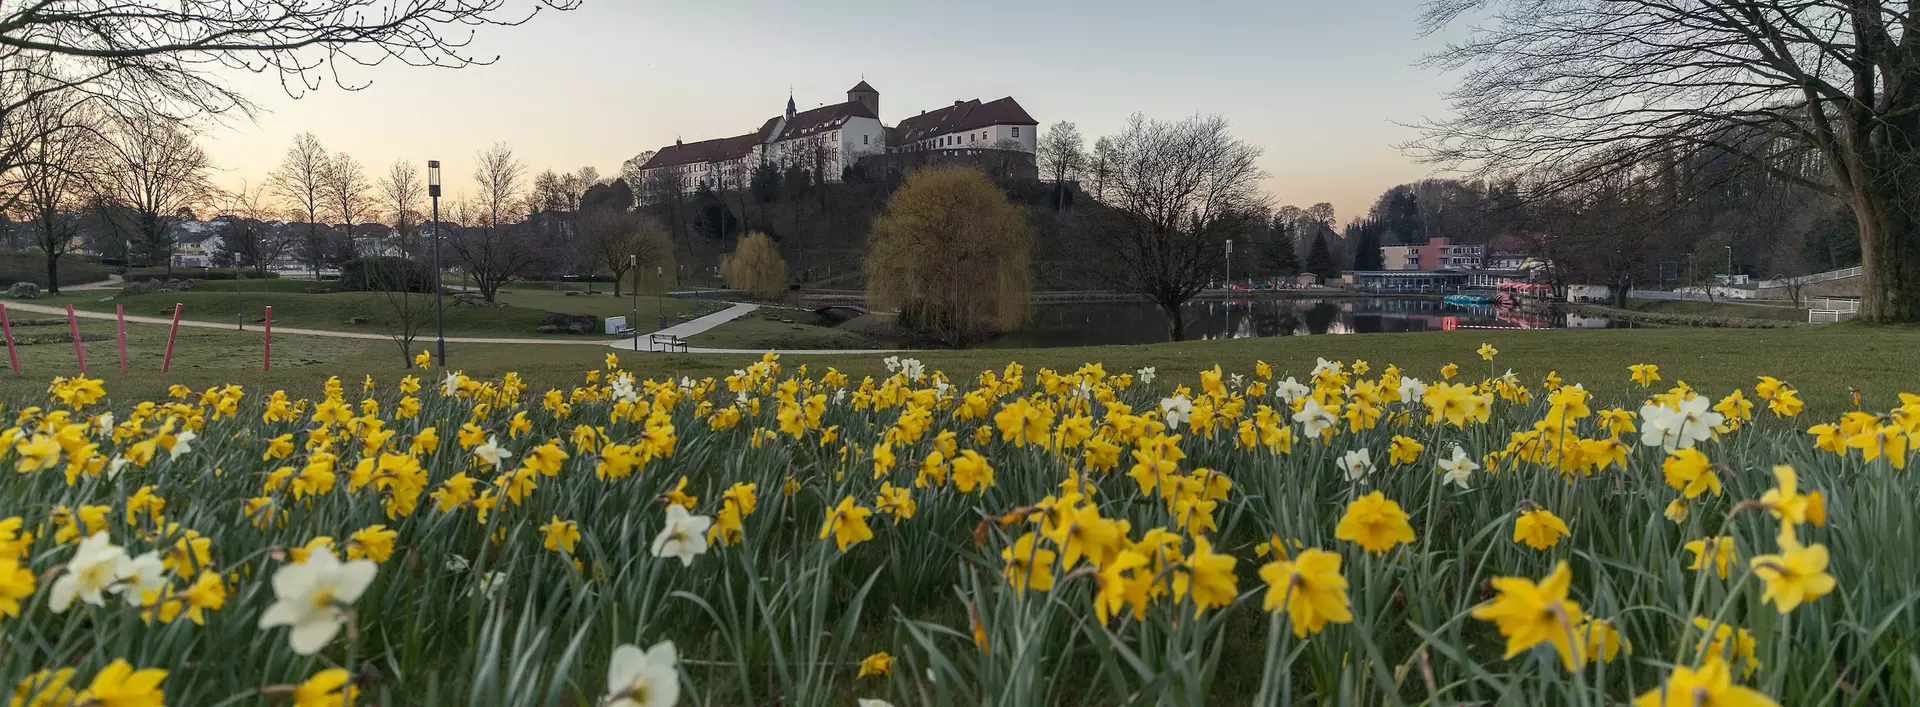 Blick auf das thronende Schloss Iburg in Niedersachsen von einer blühenden Frühjahrswiese aus